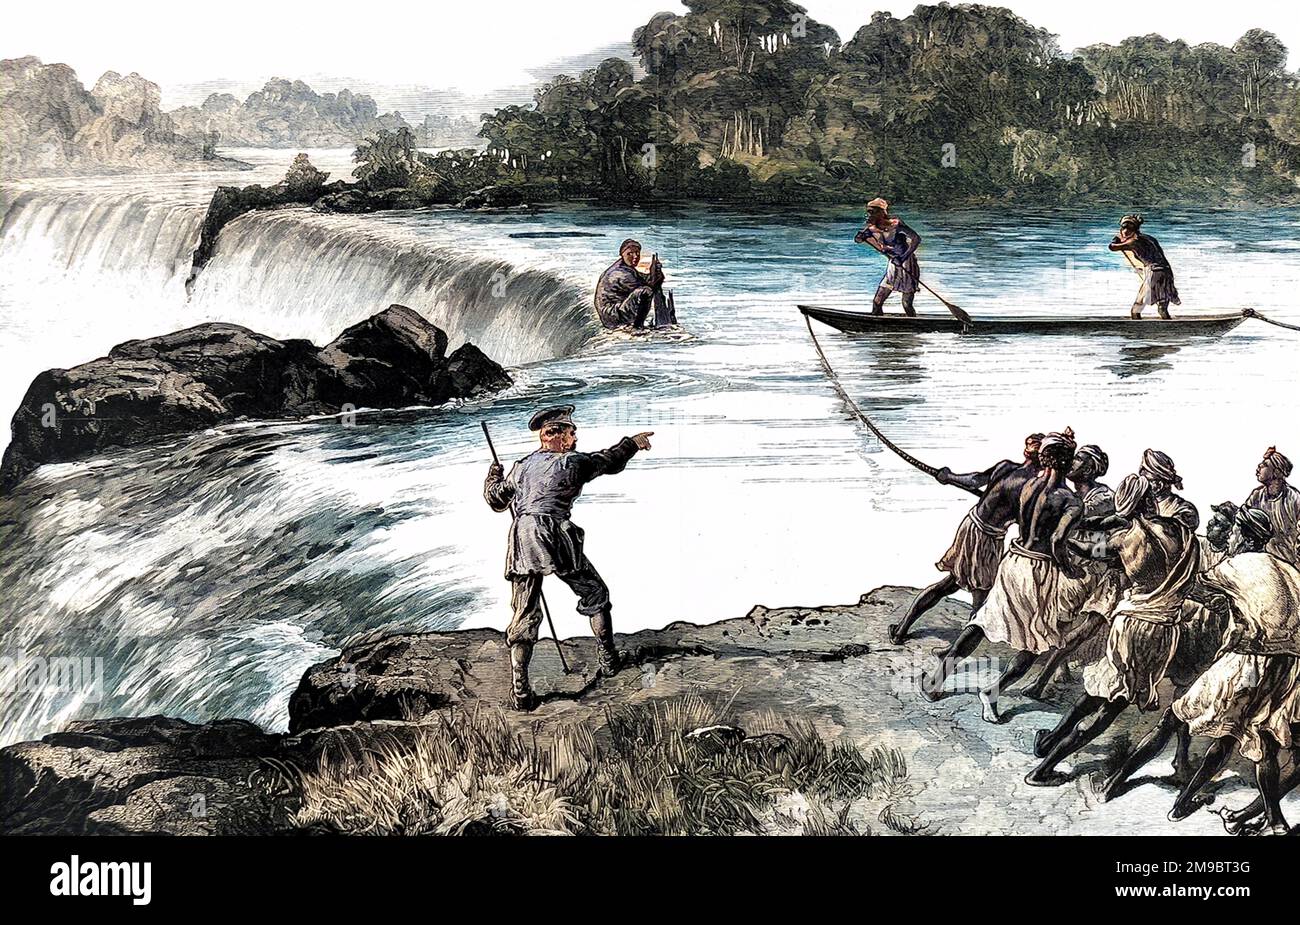 Die Rettung von Zaidi von einem Wasserfall während Sir Henry Morton Stanleys anglo-amerikanischer Expedition von 1874-1877. Zaidi (Zentrum, Houching) hatte ein Kanu zu nah am Wasserfall genommen und steckte in einer sehr gefährlichen Position fest. Stanley (Mitte mit Stiel) ist als Regisseur für die Rettungsaktion zu sehen. Stockfoto